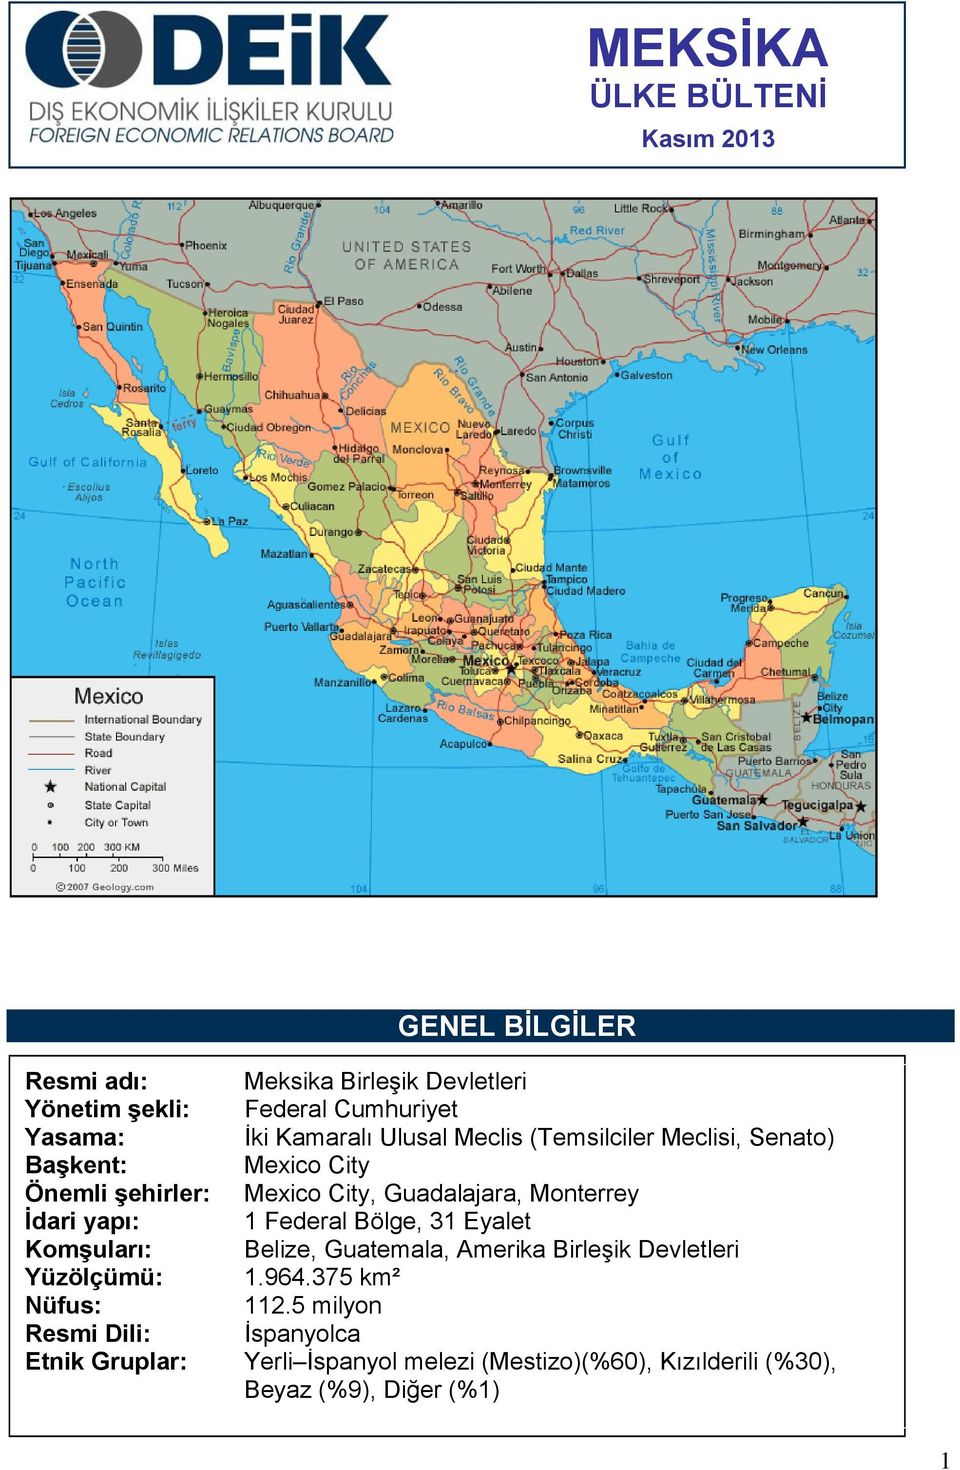 Monterrey İdari yapı: 1 Federal Bölge, 31 Eyalet Komşuları: Belize, Guatemala, Amerika BirleĢik Devletleri Yüzölçümü: 1.964.